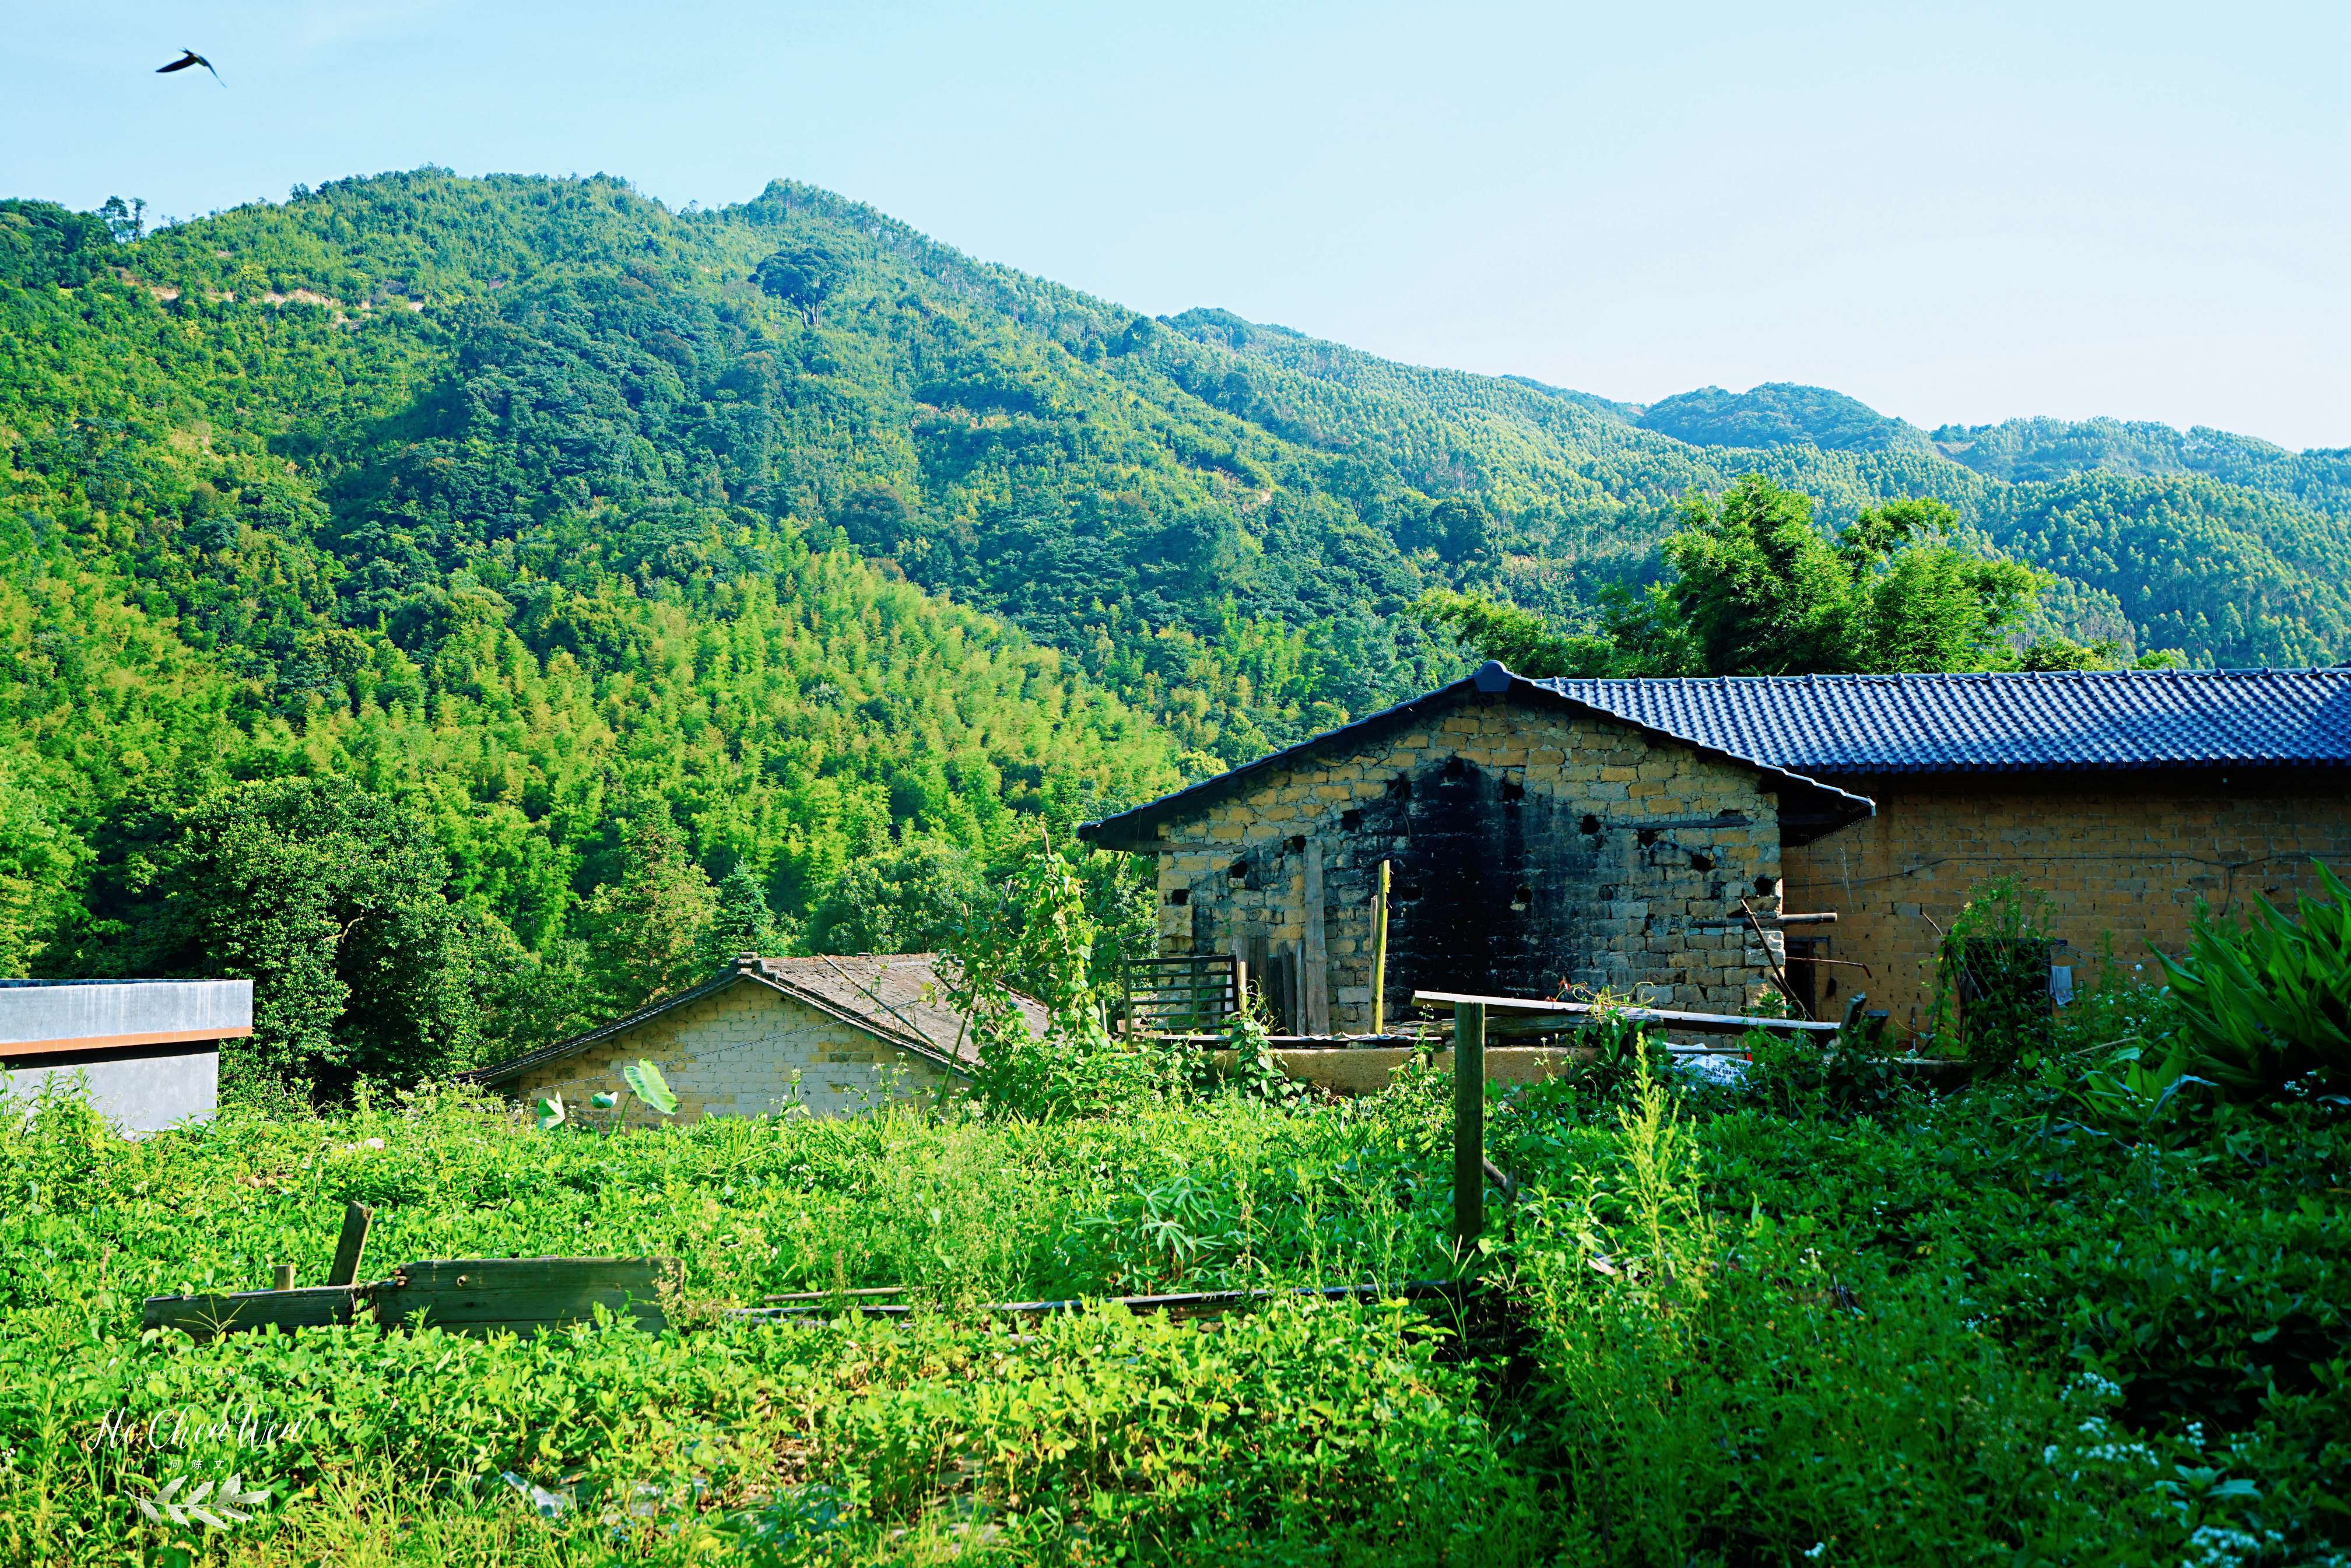 广东的一个小山村,风光秀丽,人杰地灵,更是避暑天堂